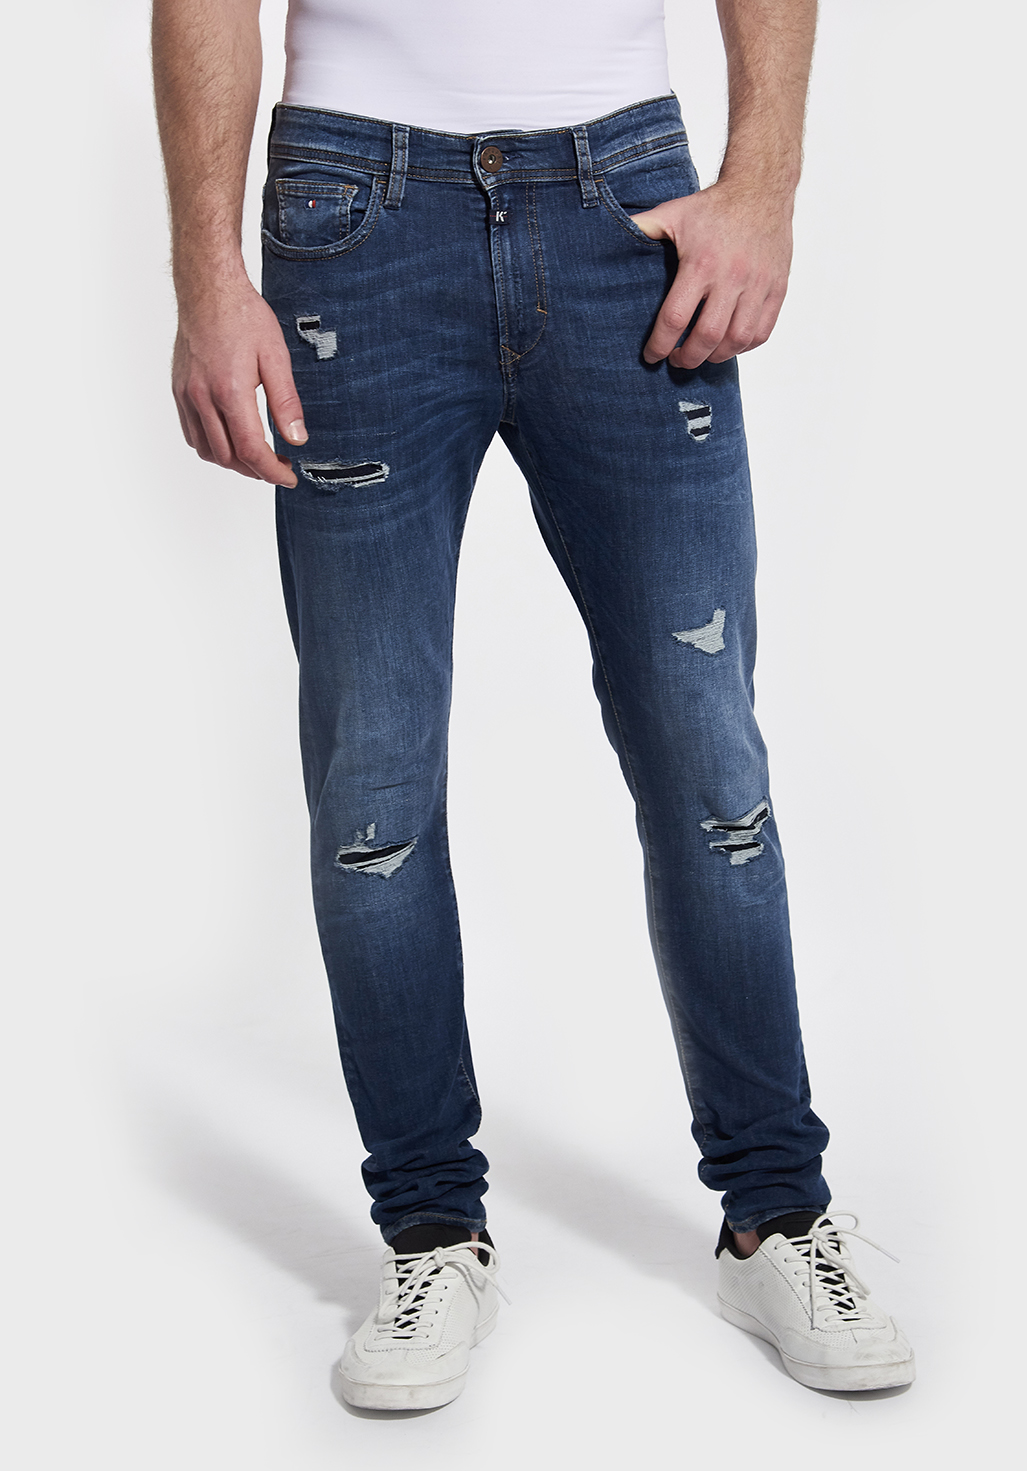 kaporal jeans price